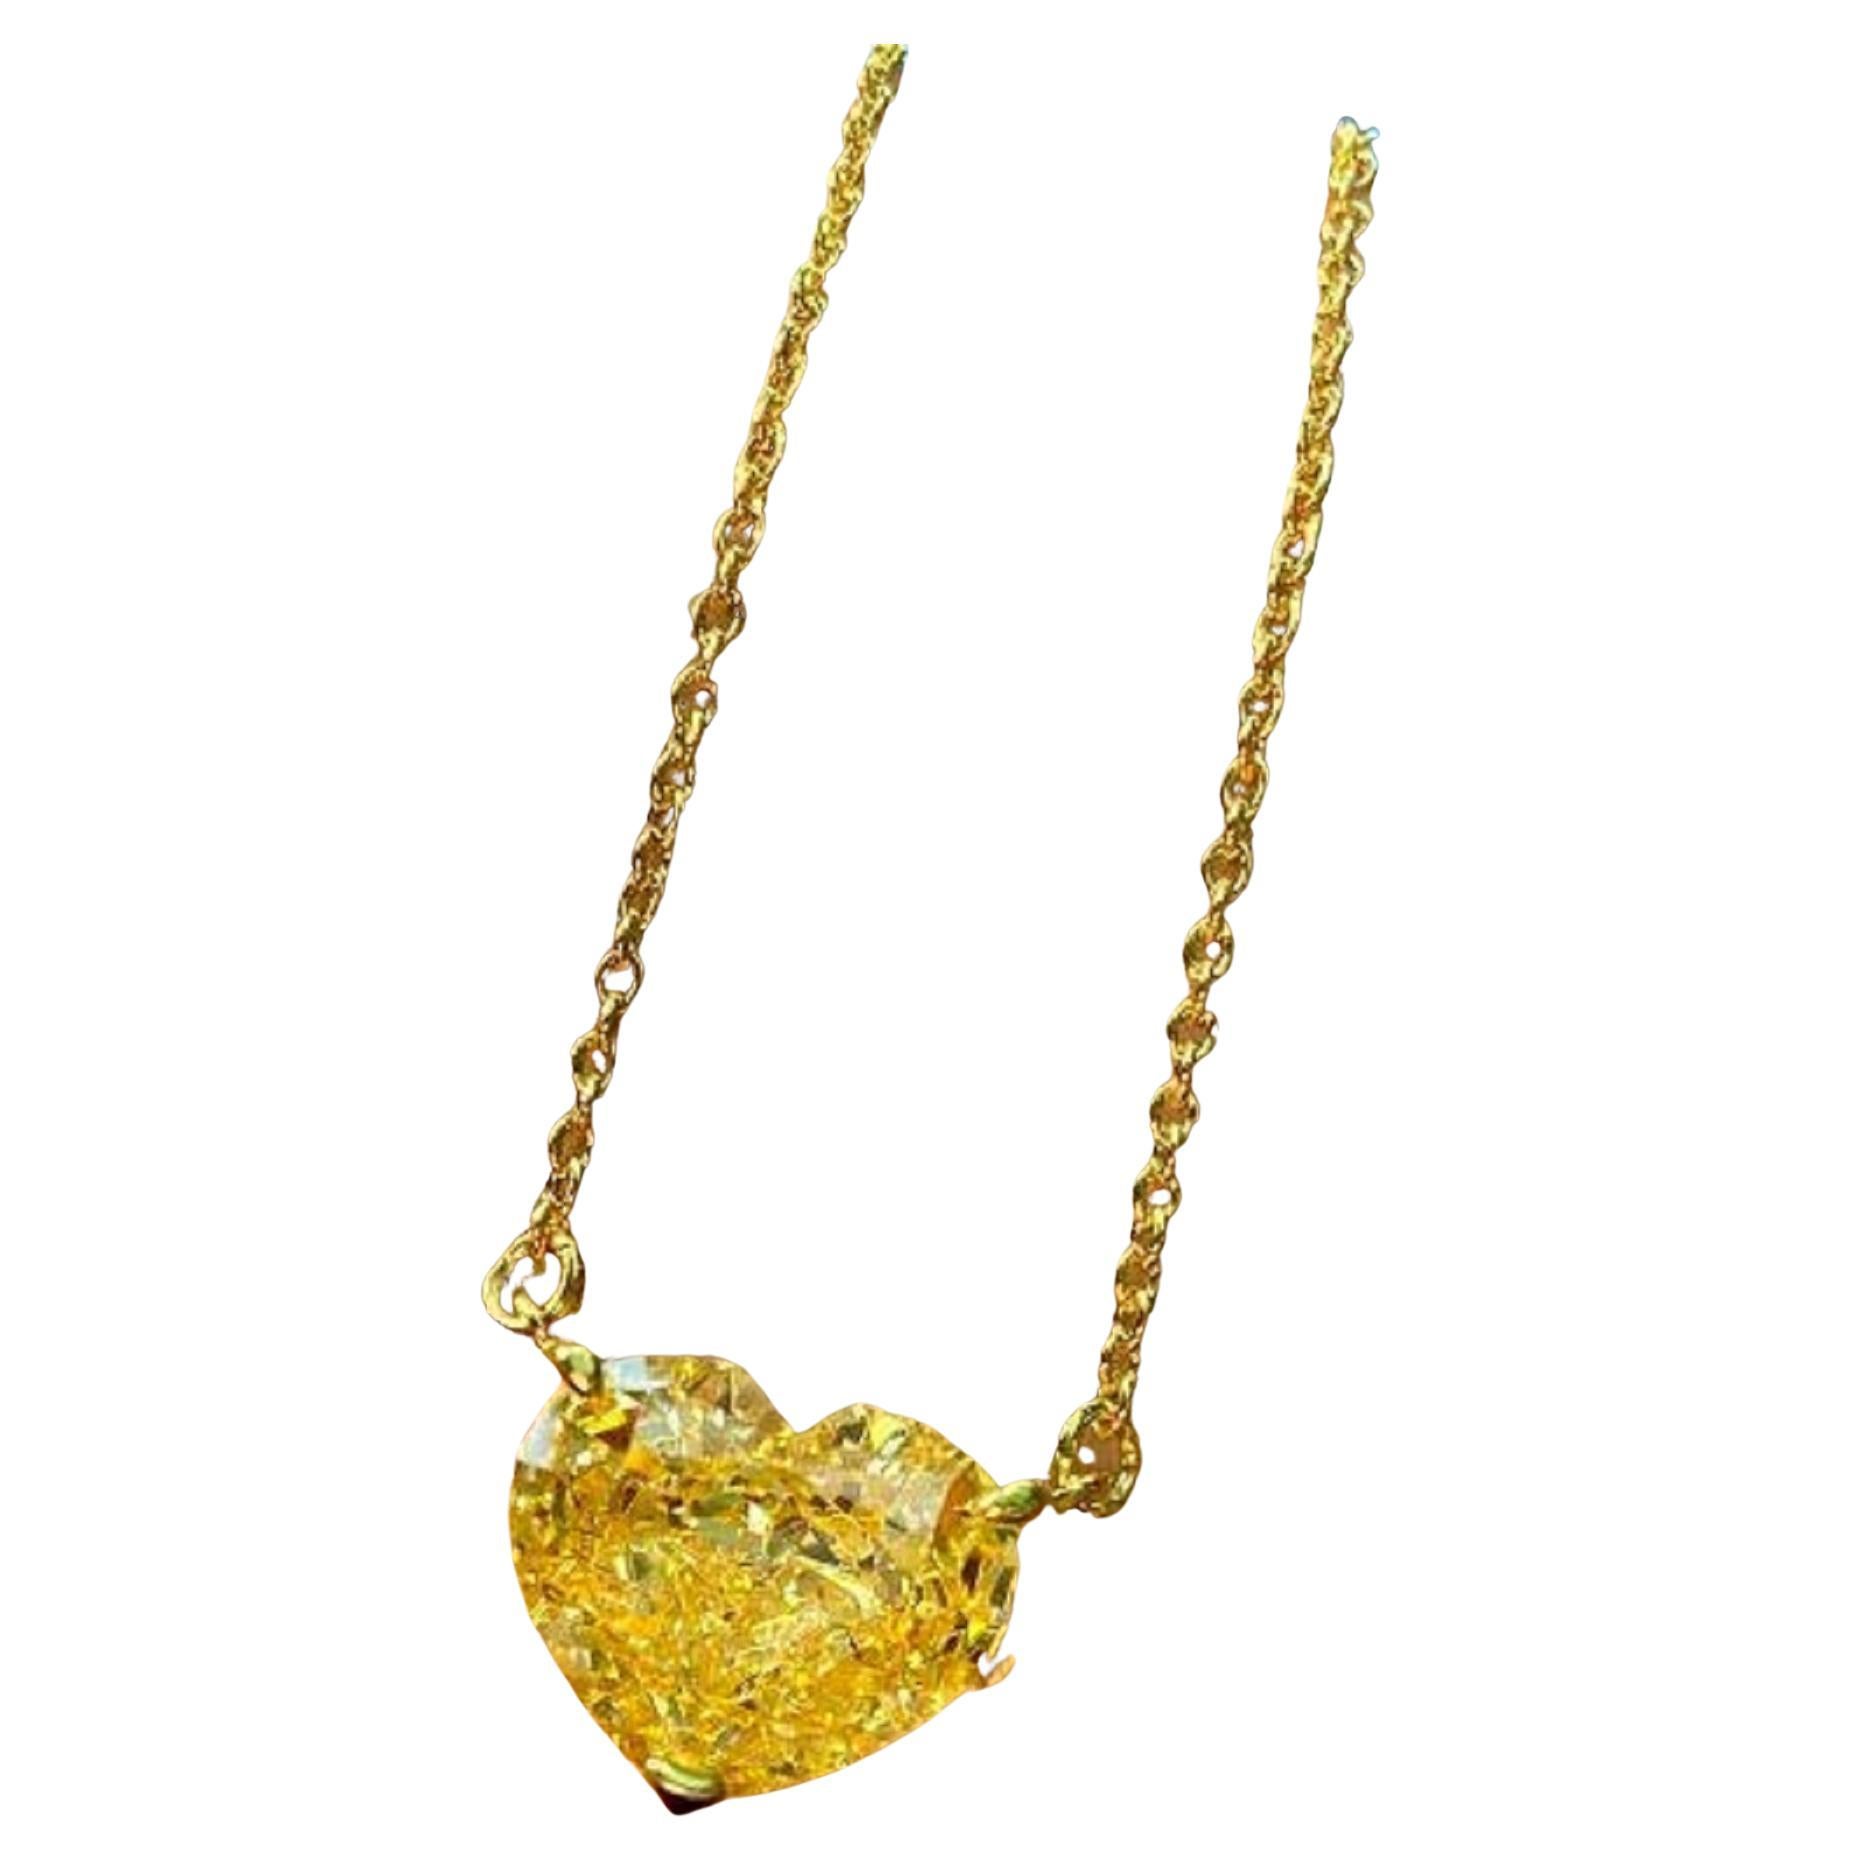 GIA-zertifizierter 3,13 Karat Fancy intensiv gelber herzförmiger Diamant-Anhänger in Herzform aus Gold

Diese schöne klassische Anhänger-Halskette von Antinori di Sanpietro verfügt über einen 3,13 Karat intensiven gelben Herzschliff Diamanten mit